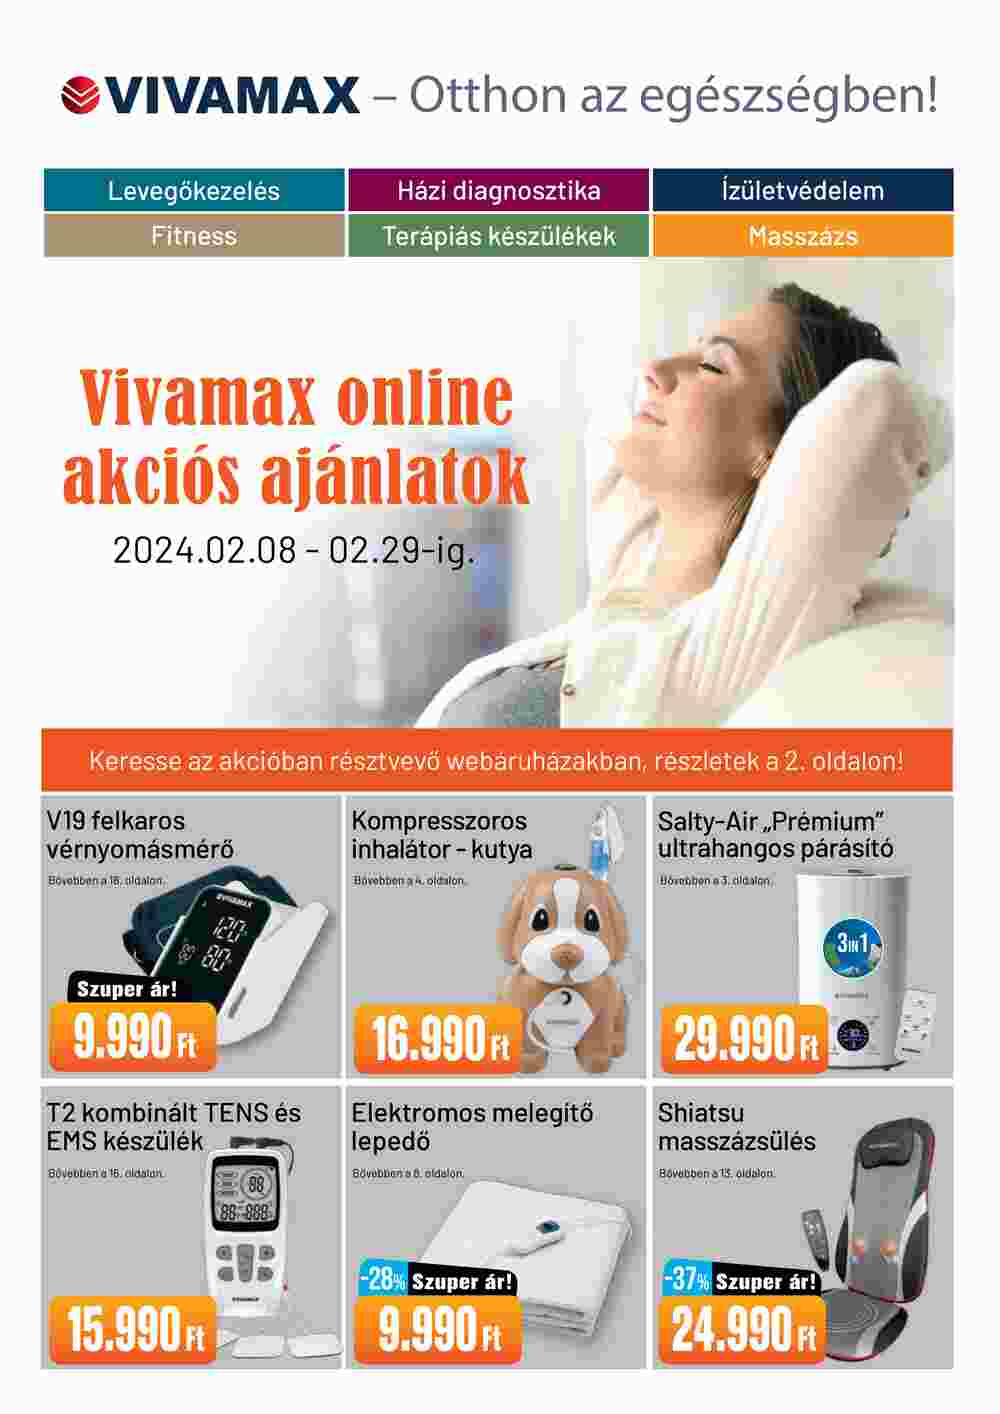 Vivamax akciós újság 2024.02.08-tól - 1. oldal.